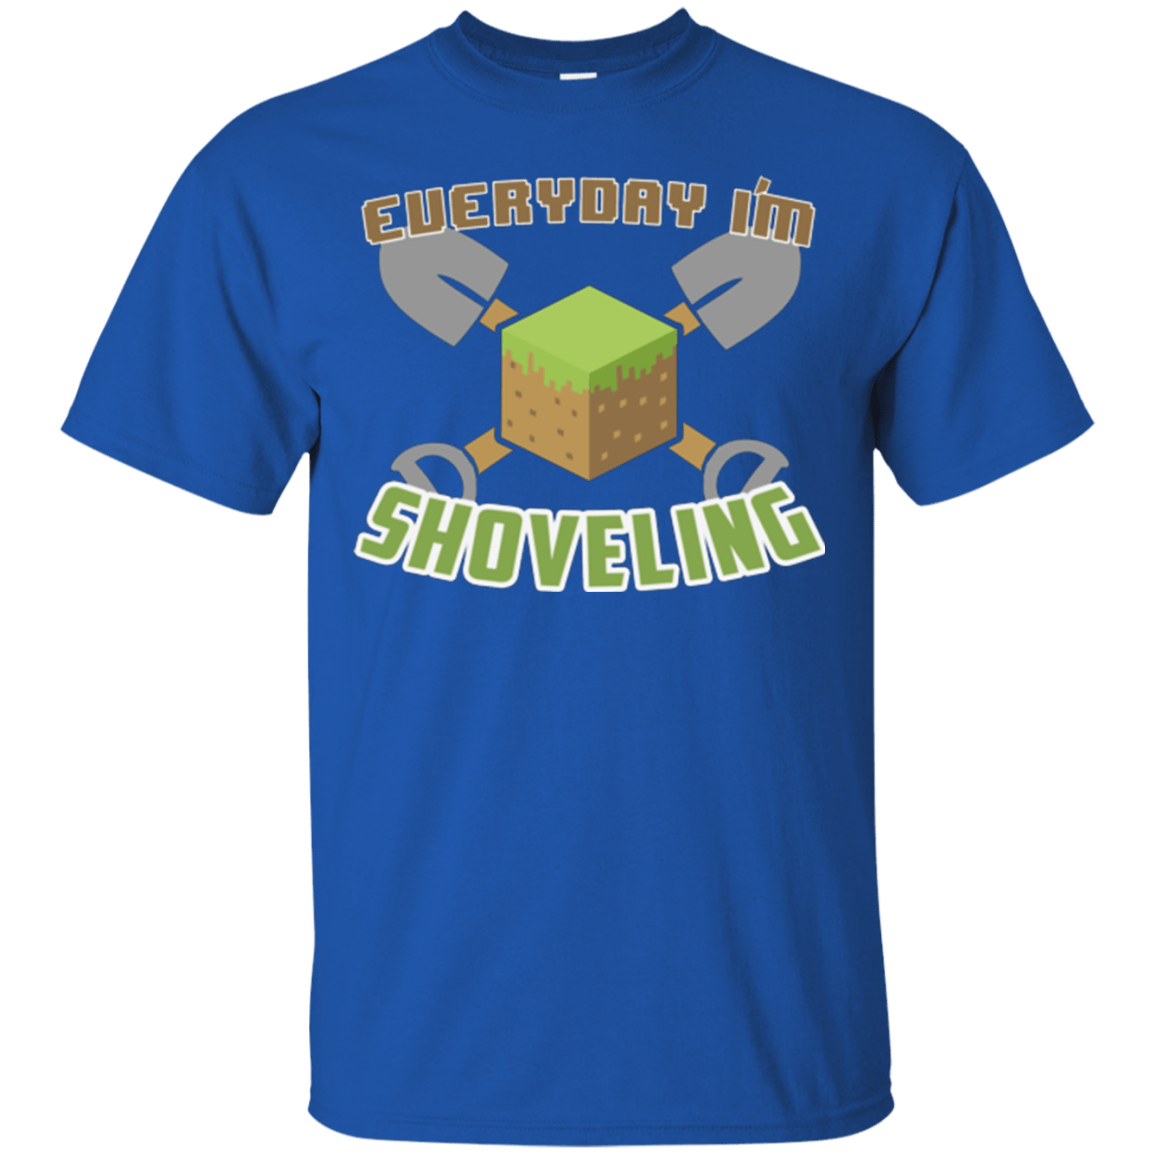 Everyday Shoveling T-Shirt